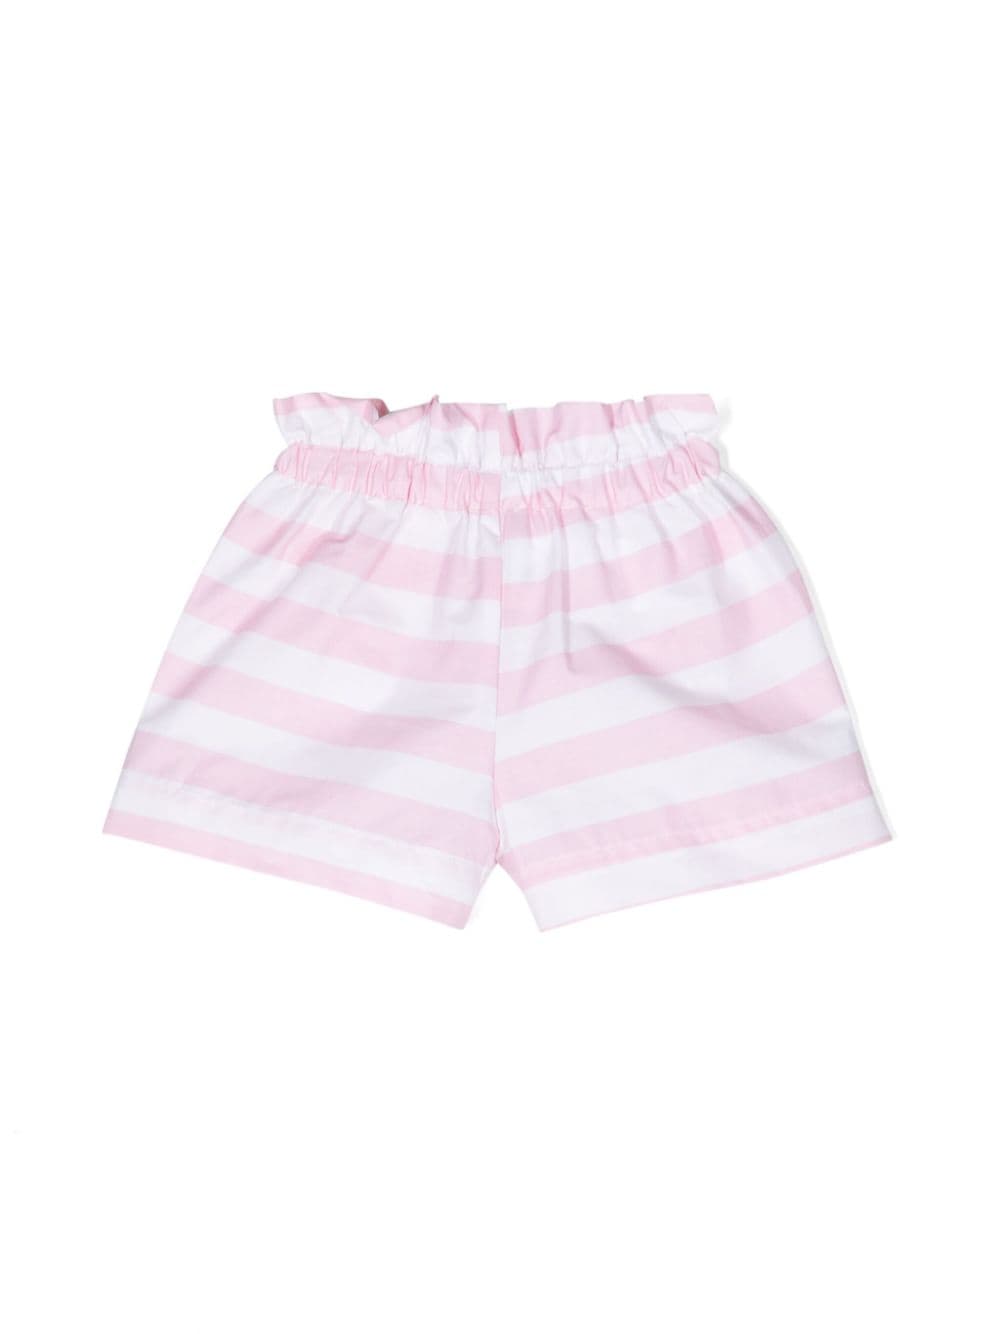 Shorts neonata rosa/bianco